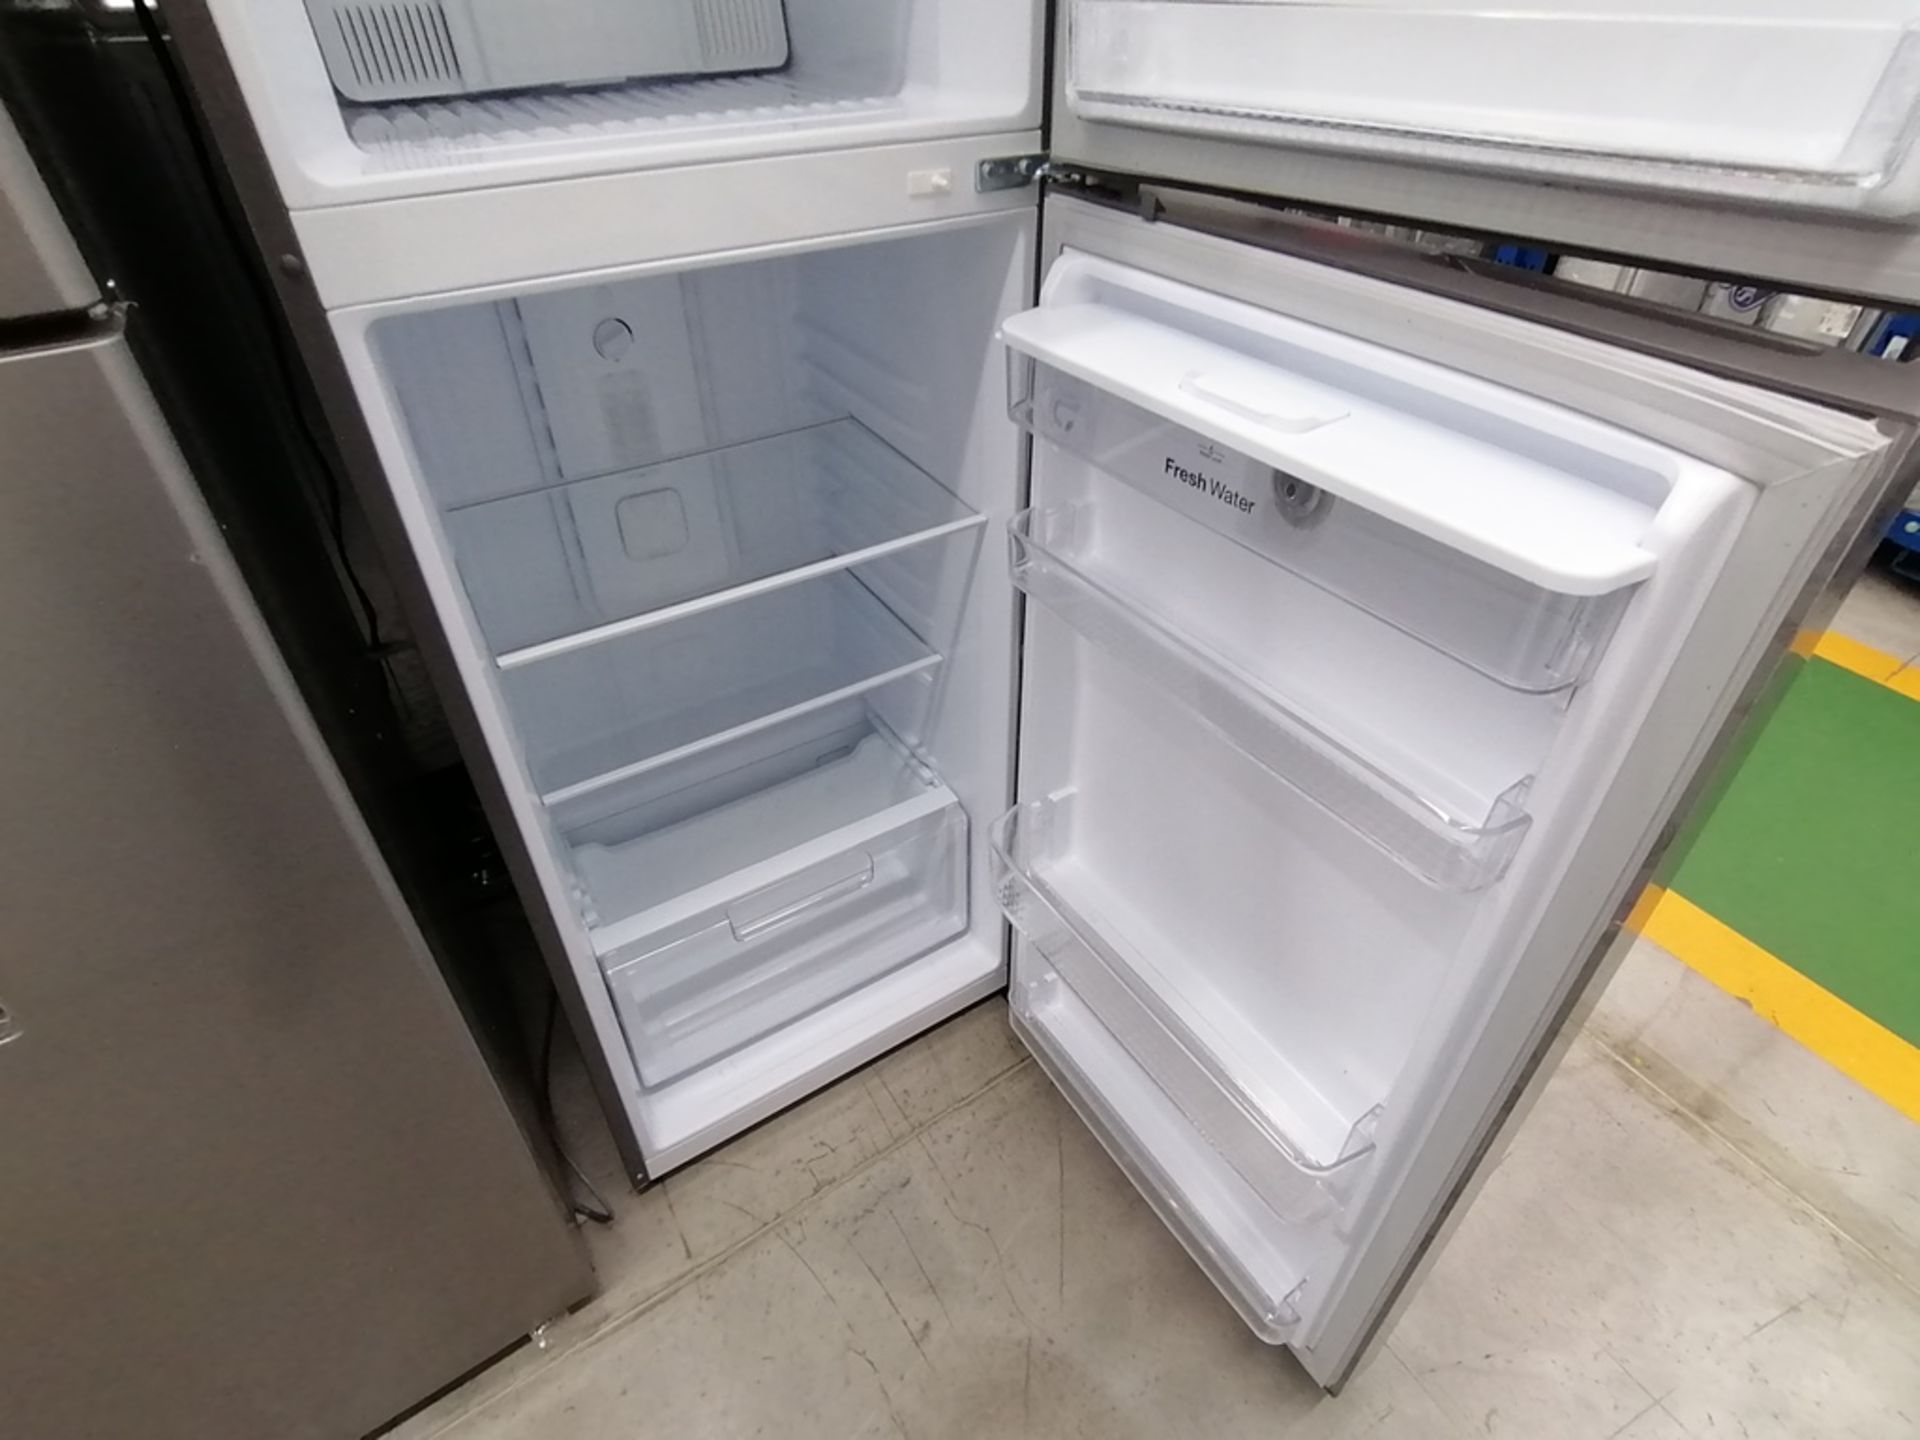 Lote de 2 refrigeradores incluye: 1 Refrigerador con dispensador de agua, Marca Winia, Modelo DFR40 - Image 13 of 17